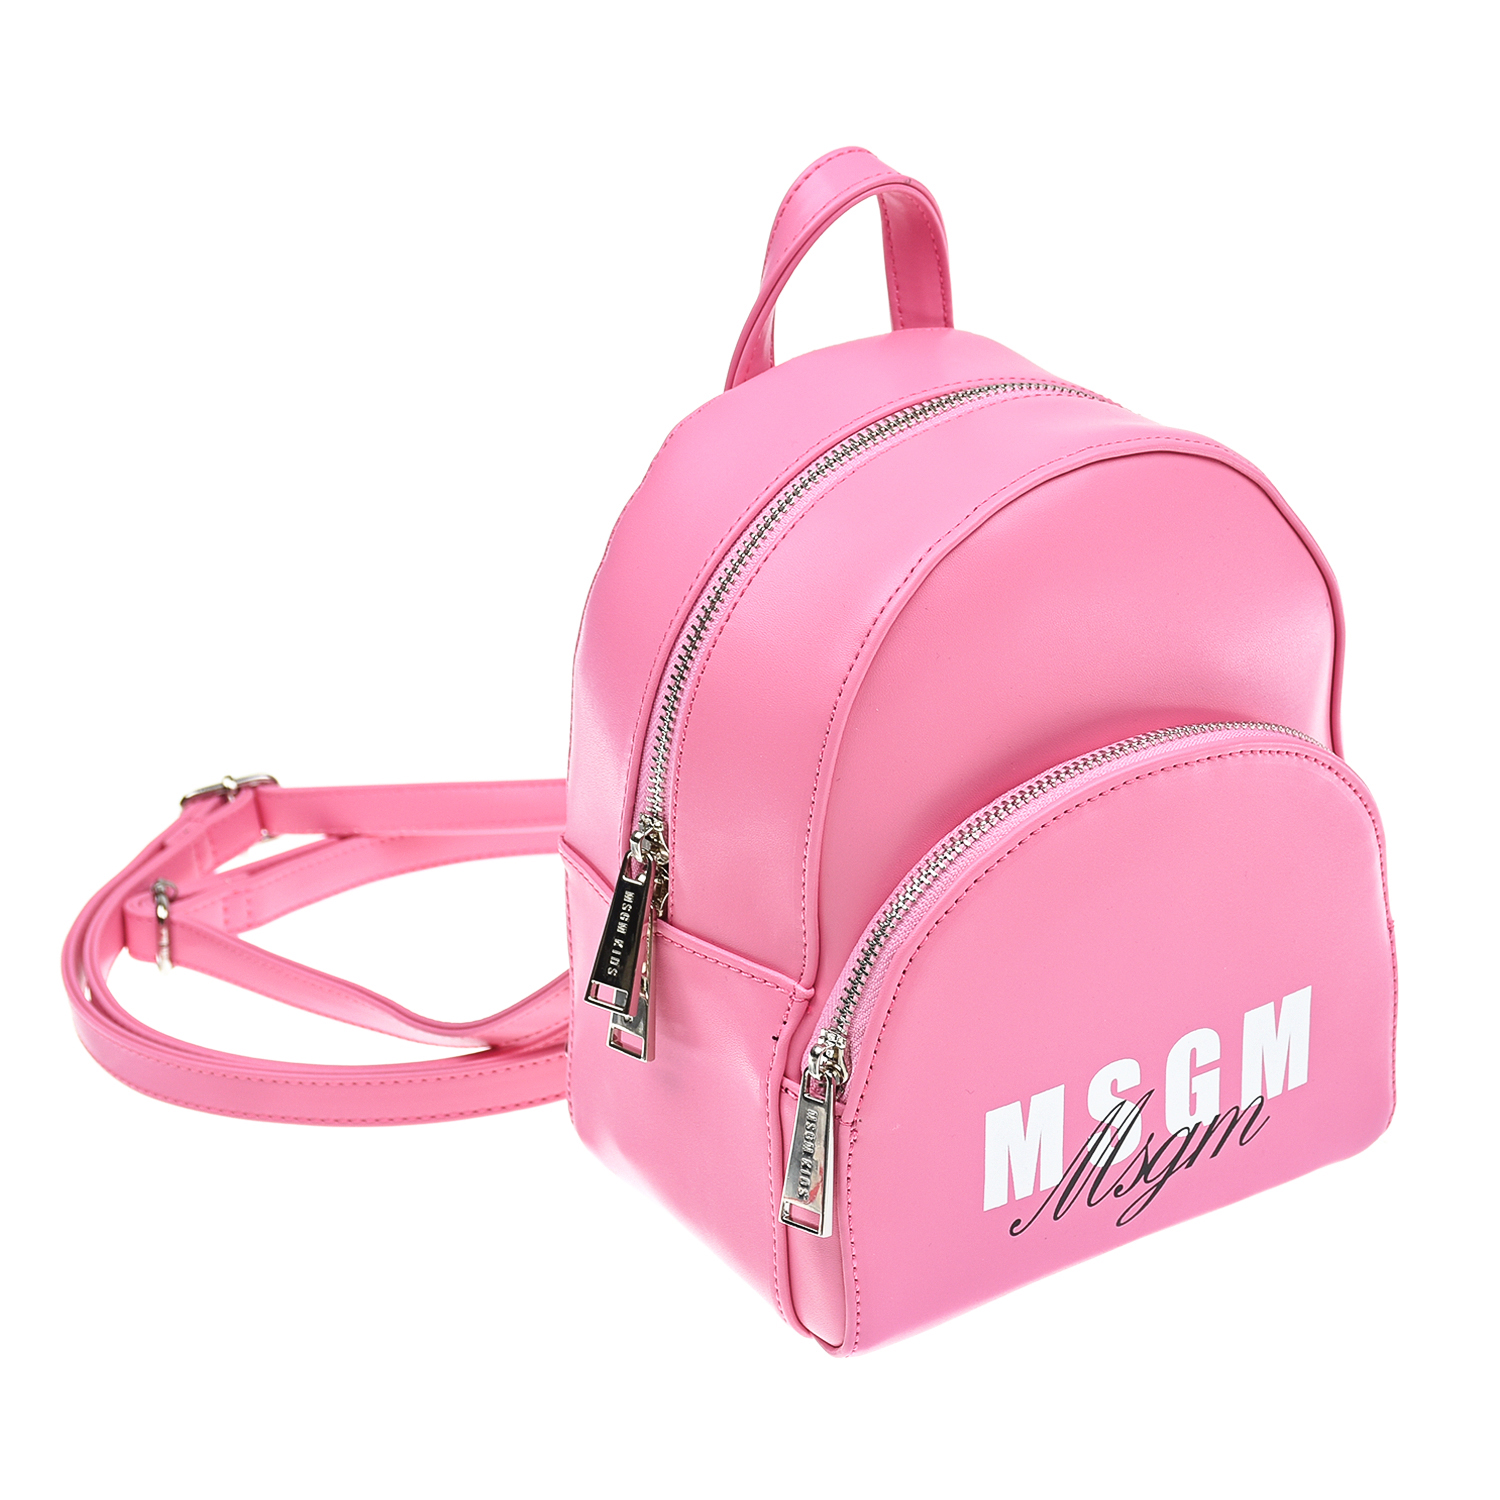 Розовый рюкзак с белым логотипом MSGM детский, размер unica - фото 2